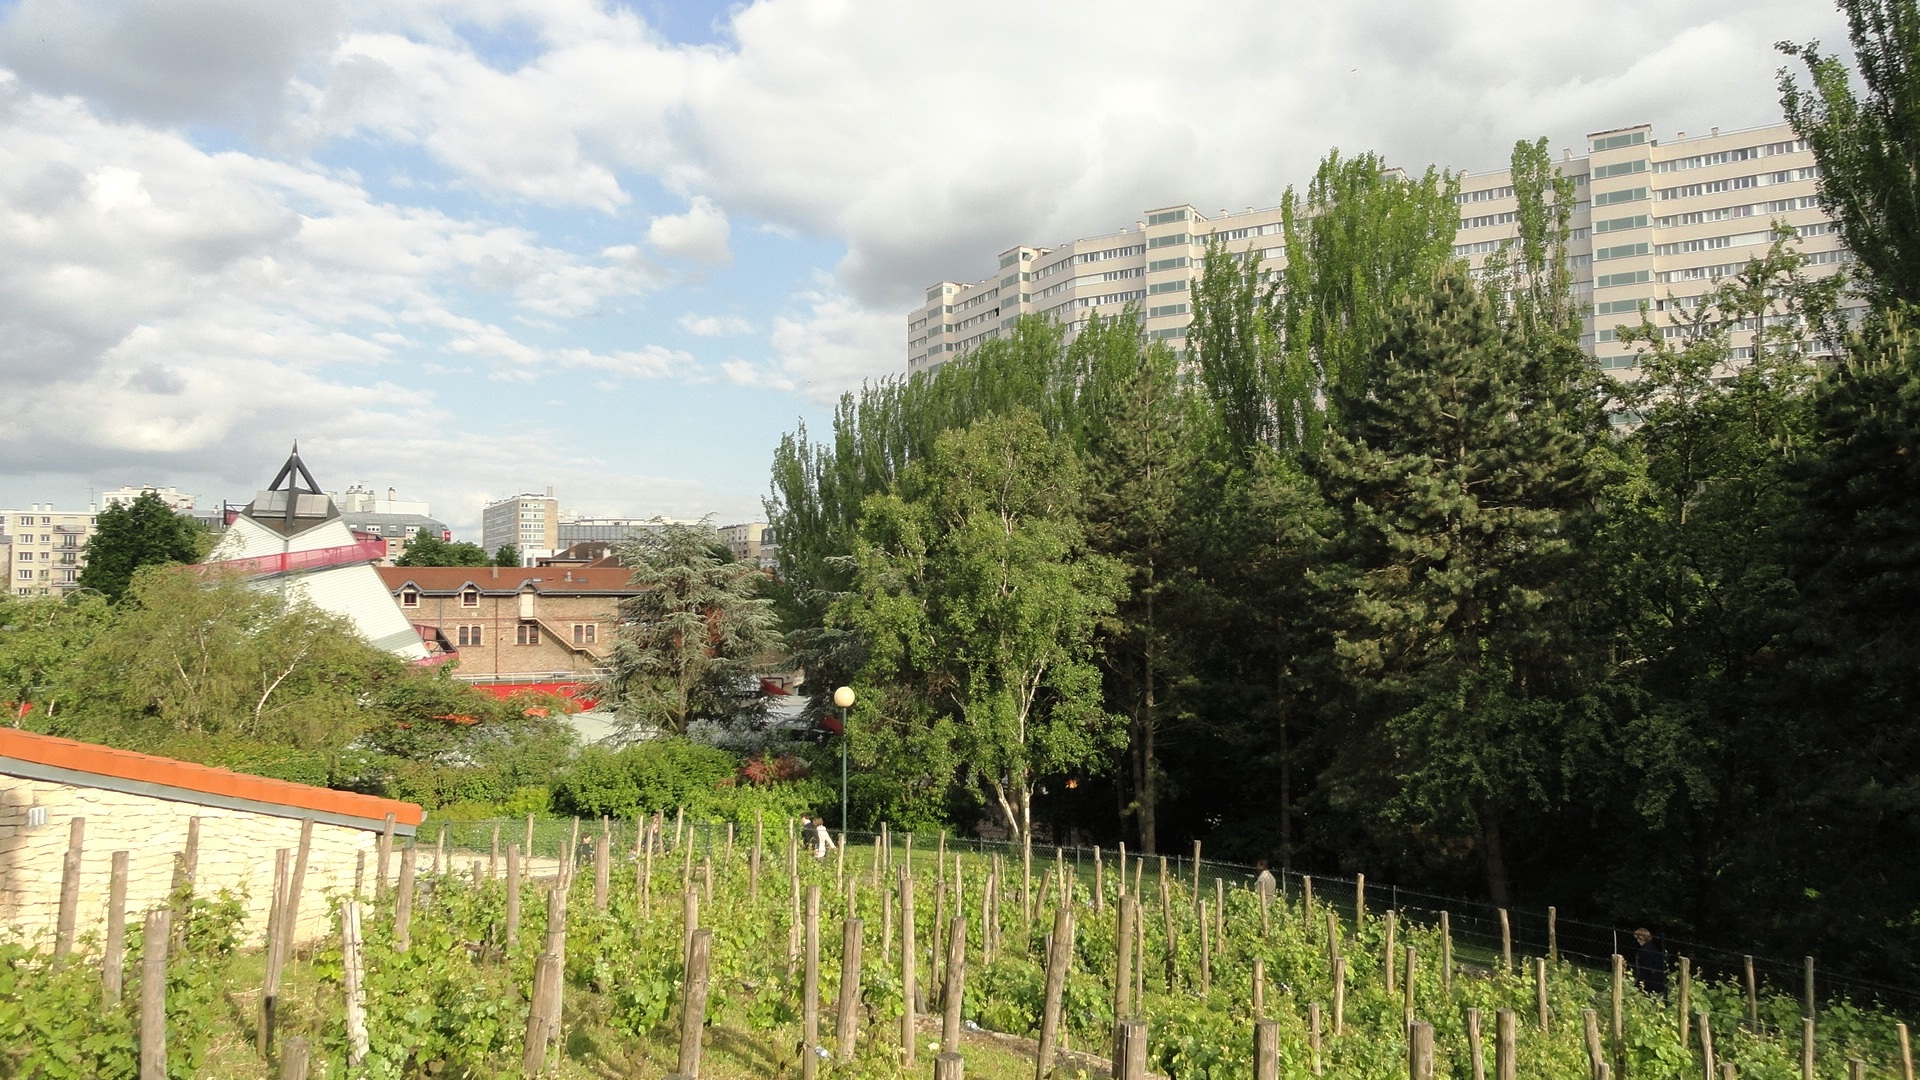 Parc Georges Brassens - Pieds de vigne